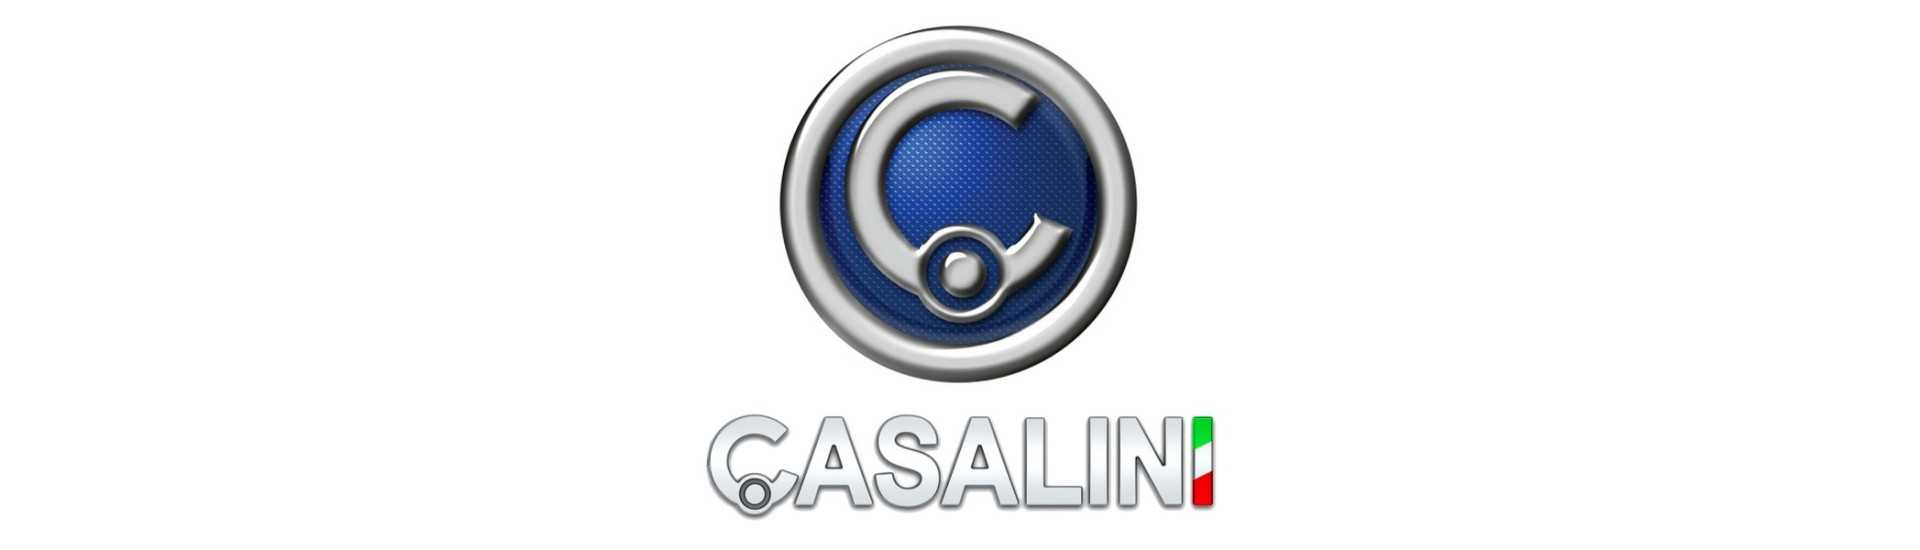 Dachhimmel zum besten Preis für ein Auto ohne Führerschein Casalini